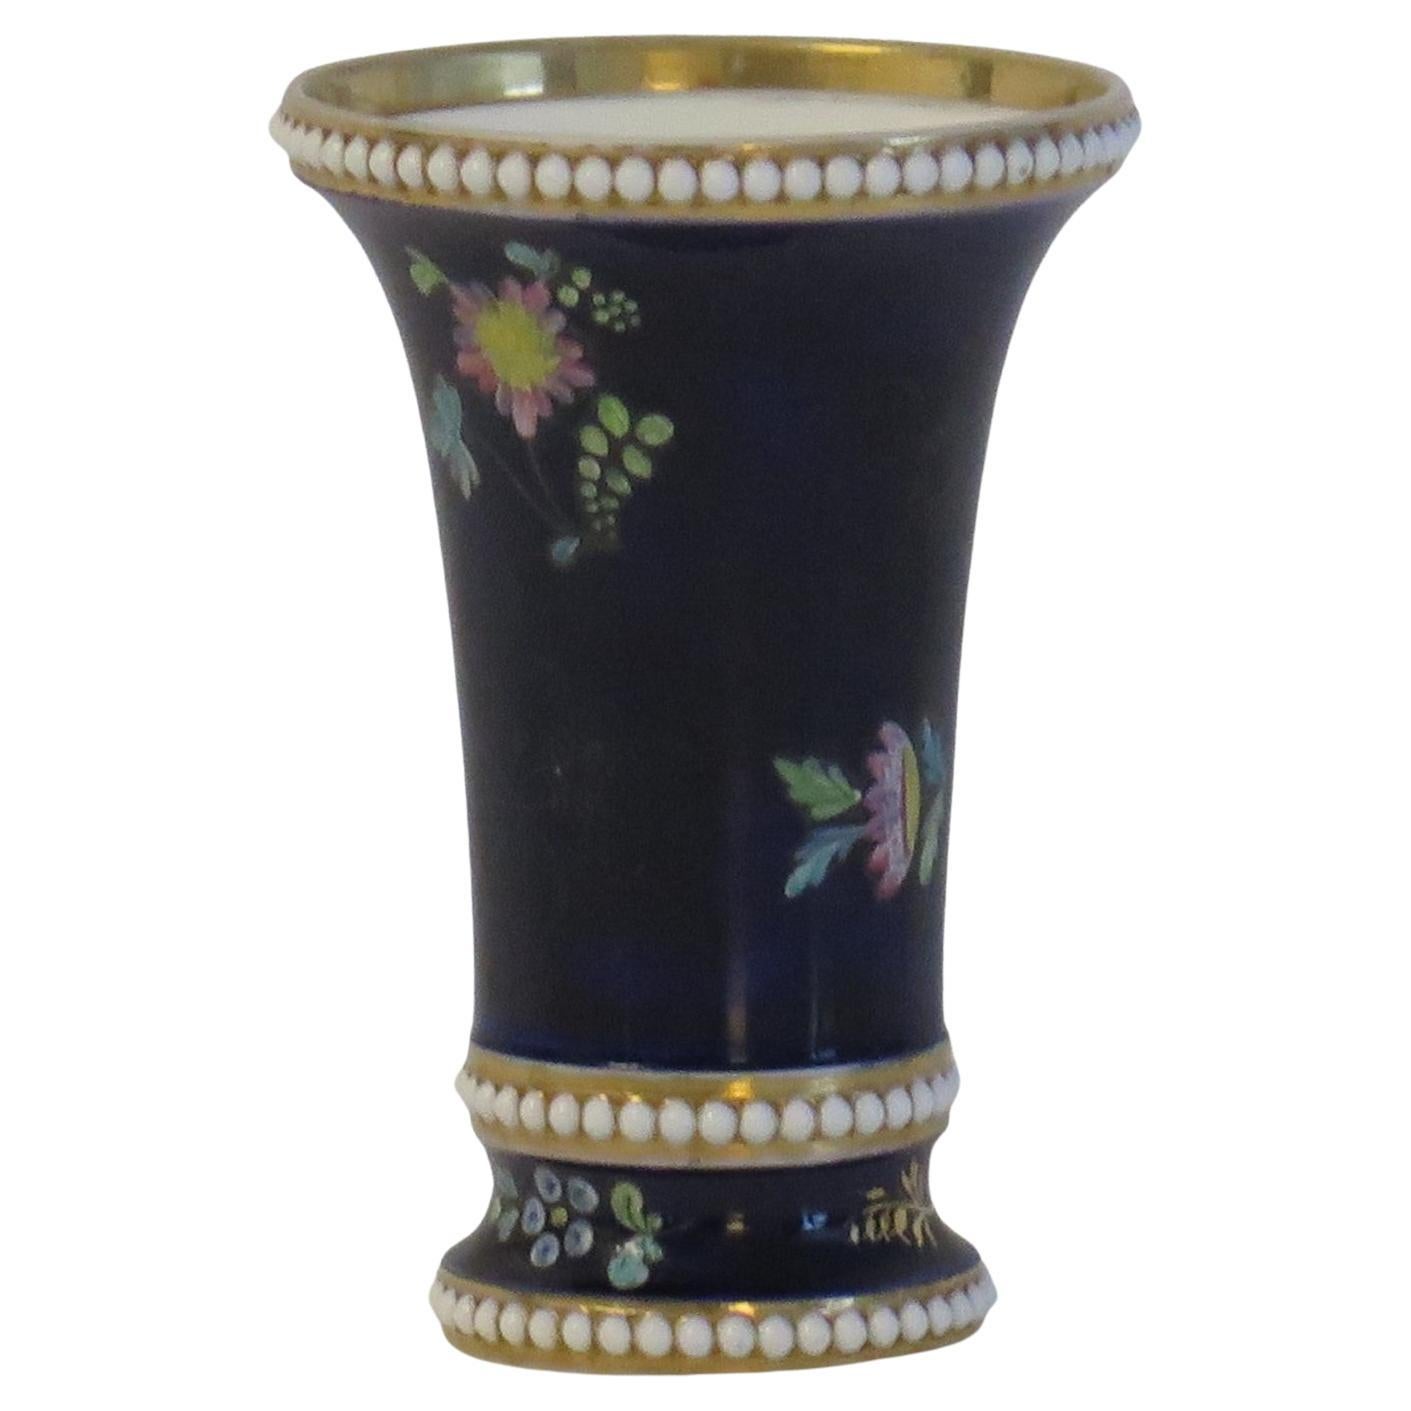 Il s'agit d'un petit vase à déversement, peint à la main en brins floraux émaillés et dorés sur un fond bleu Mazarin, fabriqué par Josiah Spode, Stoke on Trent, Angleterre et datant d'environ 1810.

Le vase est bien empoté, avec une forme effilée